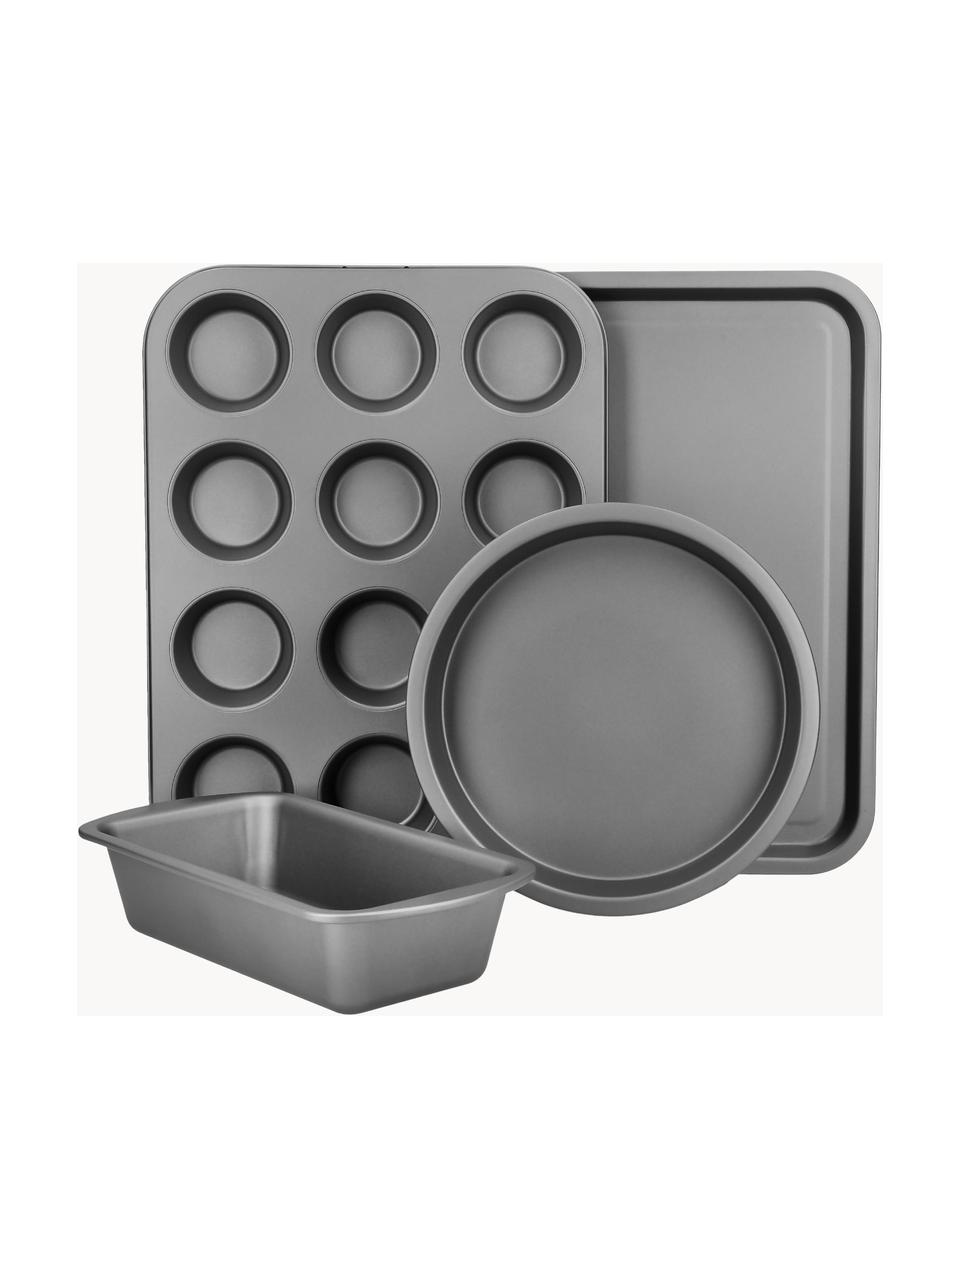 Backformen KitchenCraft mit Antihaft-Beschichtung, 4er-Set, Stahl mit Antihaft-Beschichtung, Schwarz, Set mit verschiedenen Grössen